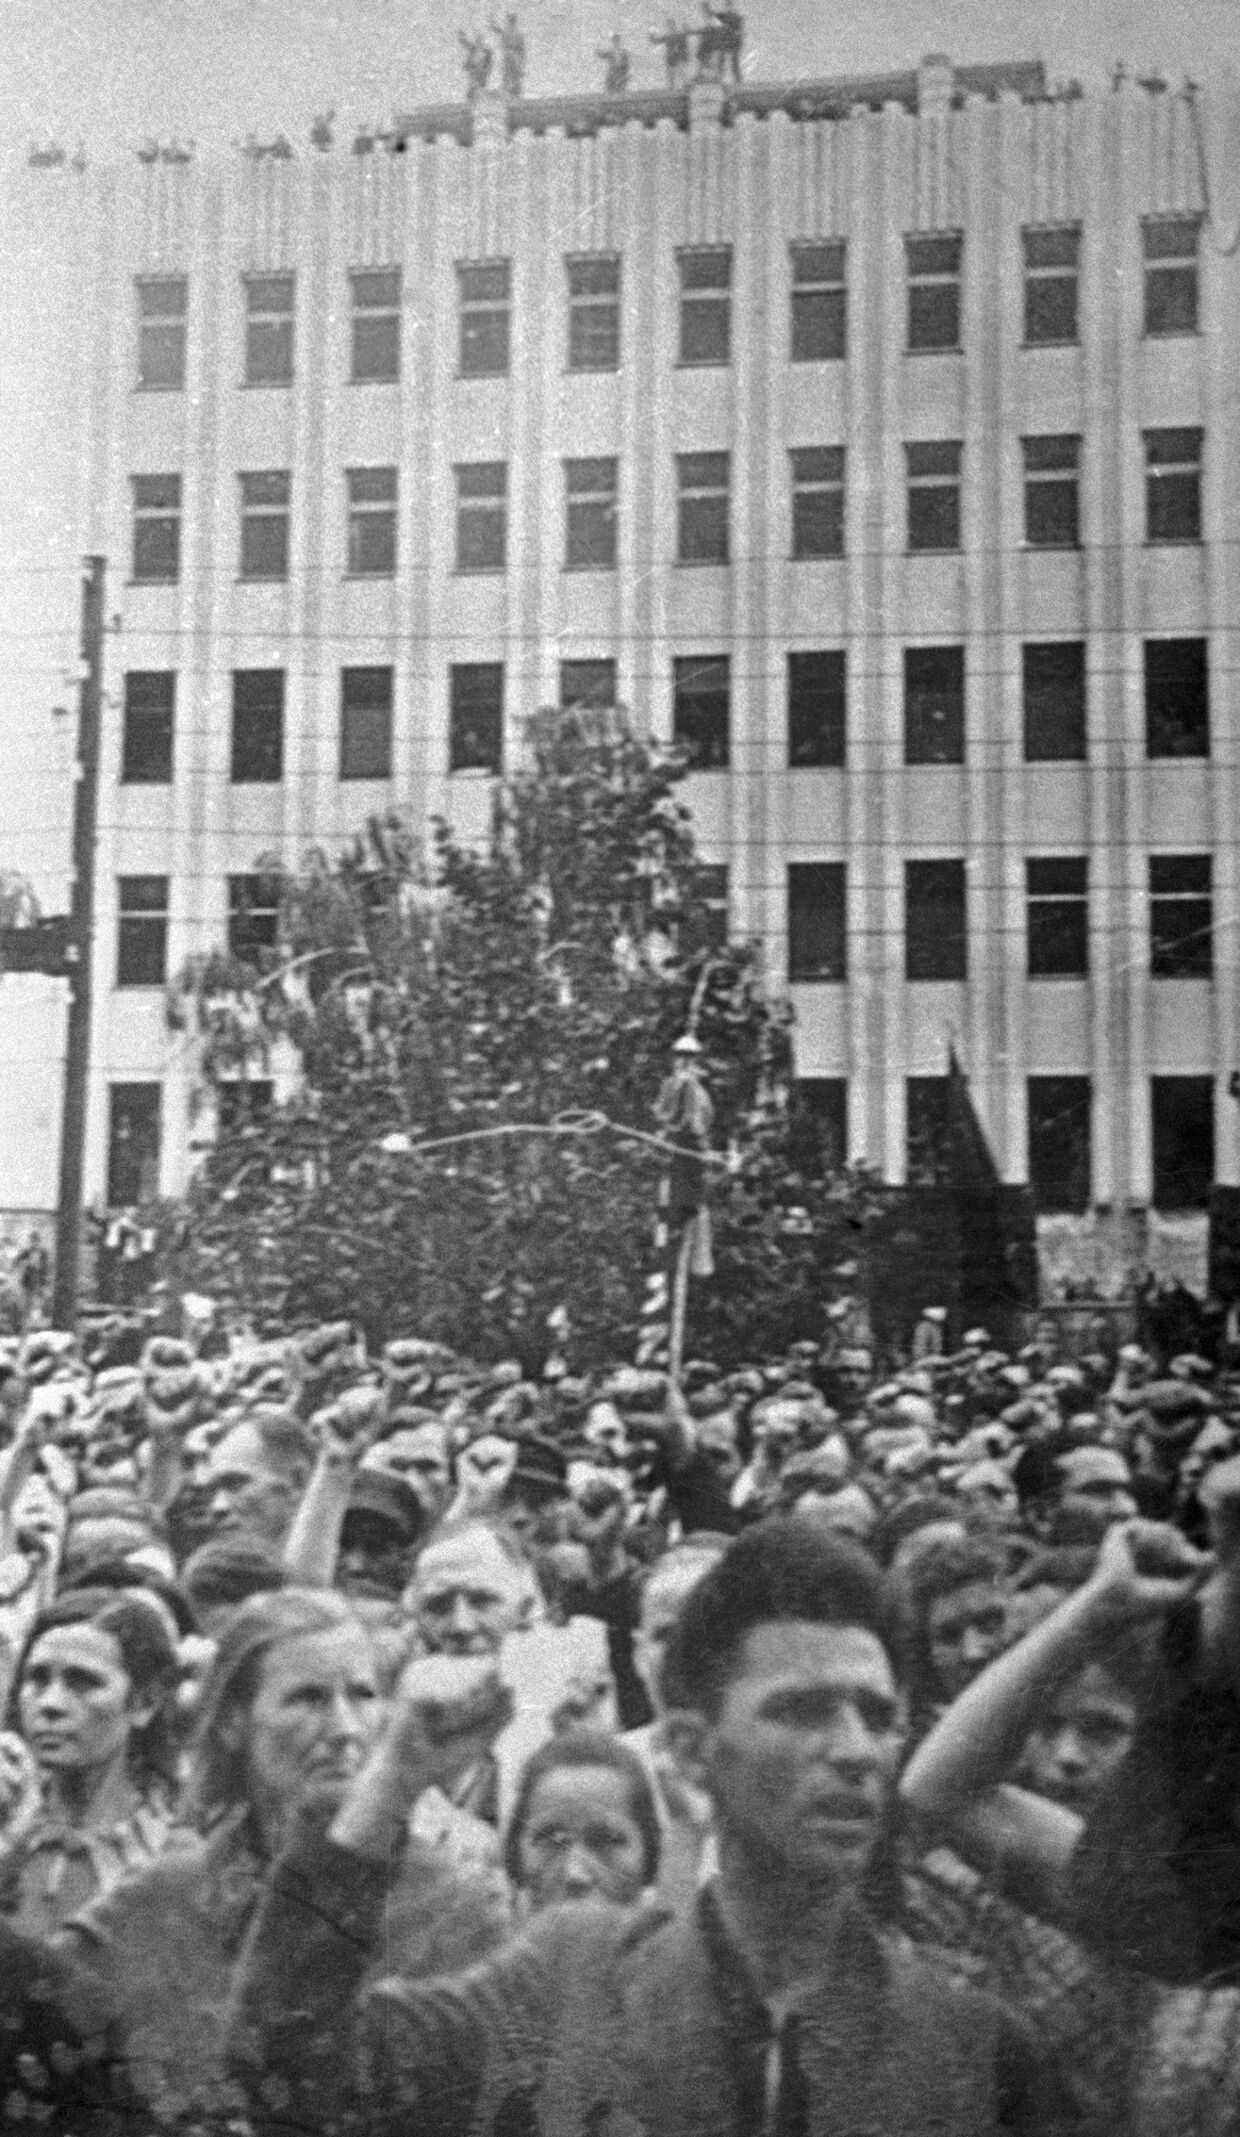 Жители Каунаса принимают участие в митинге, посвященном принятию Литвы в состав СССР.